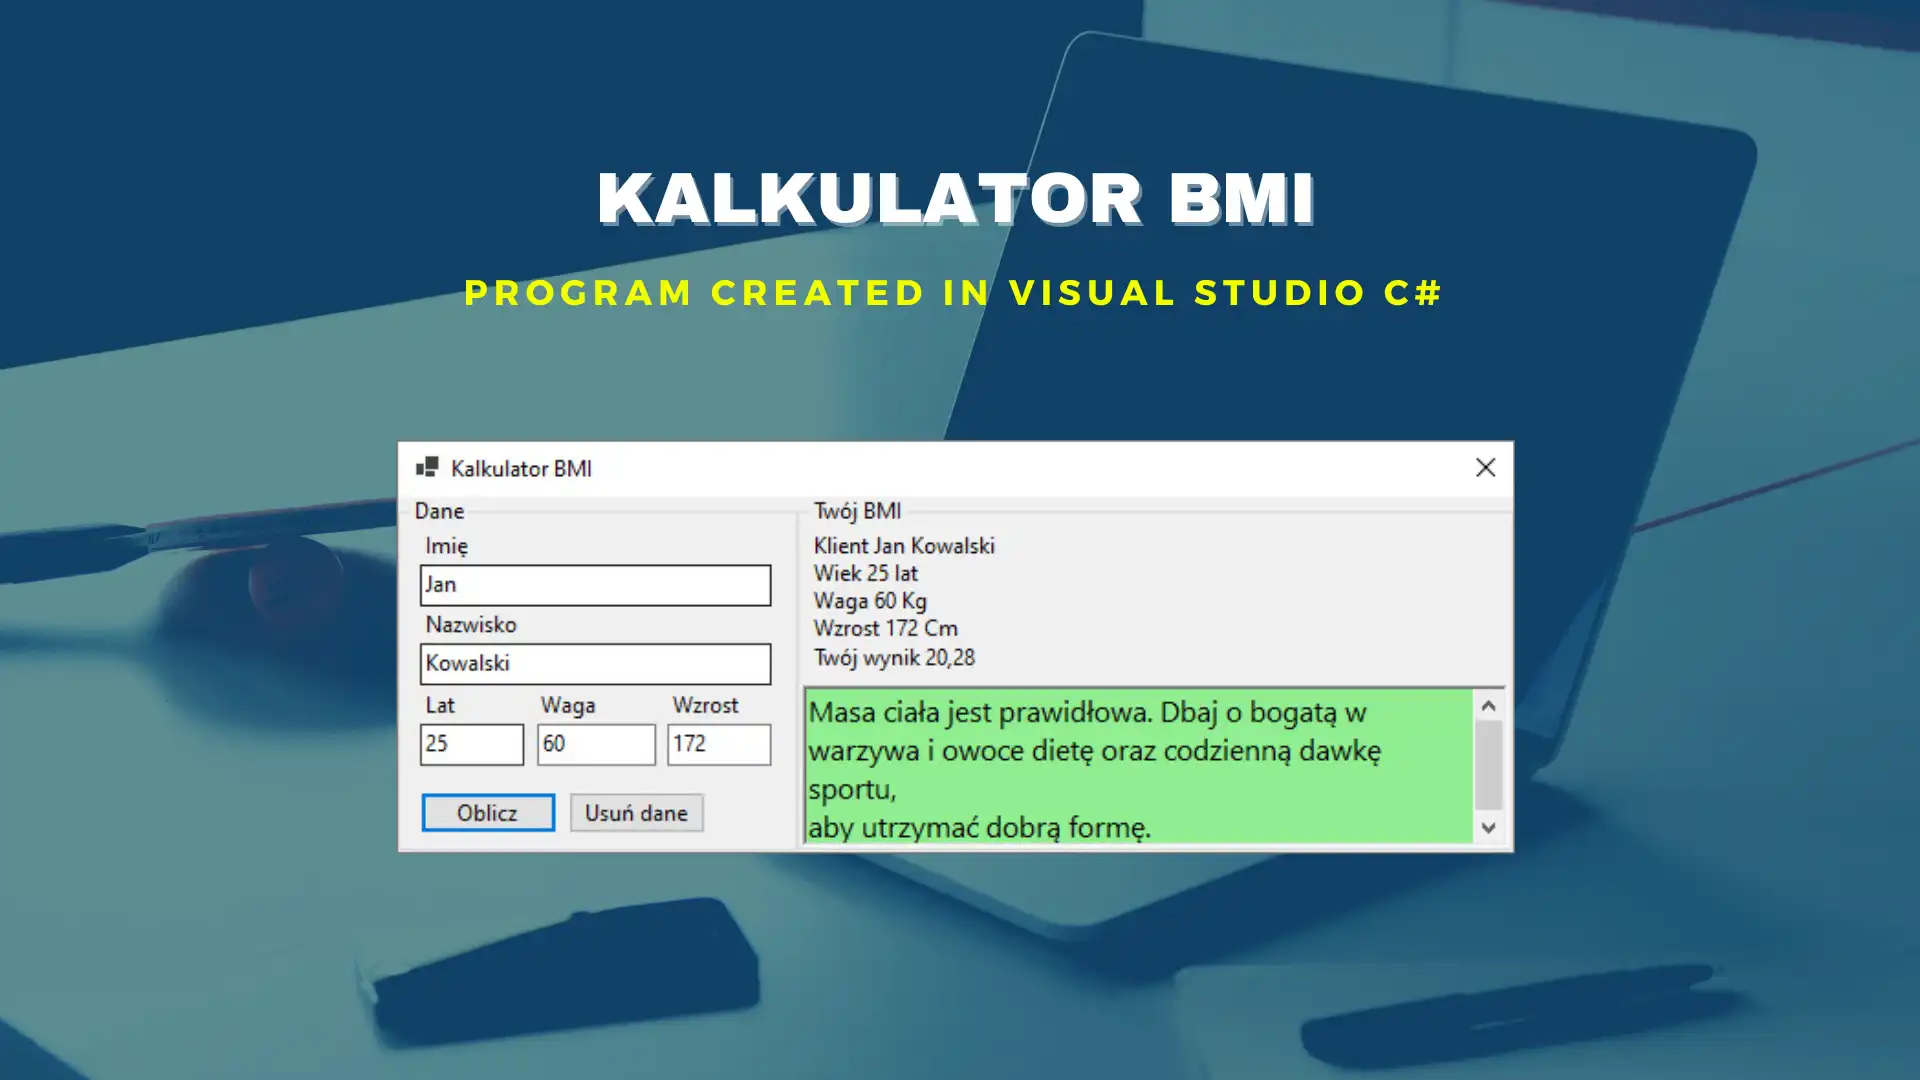 下载网络工具或网络应用程序 BMI Kalkulator